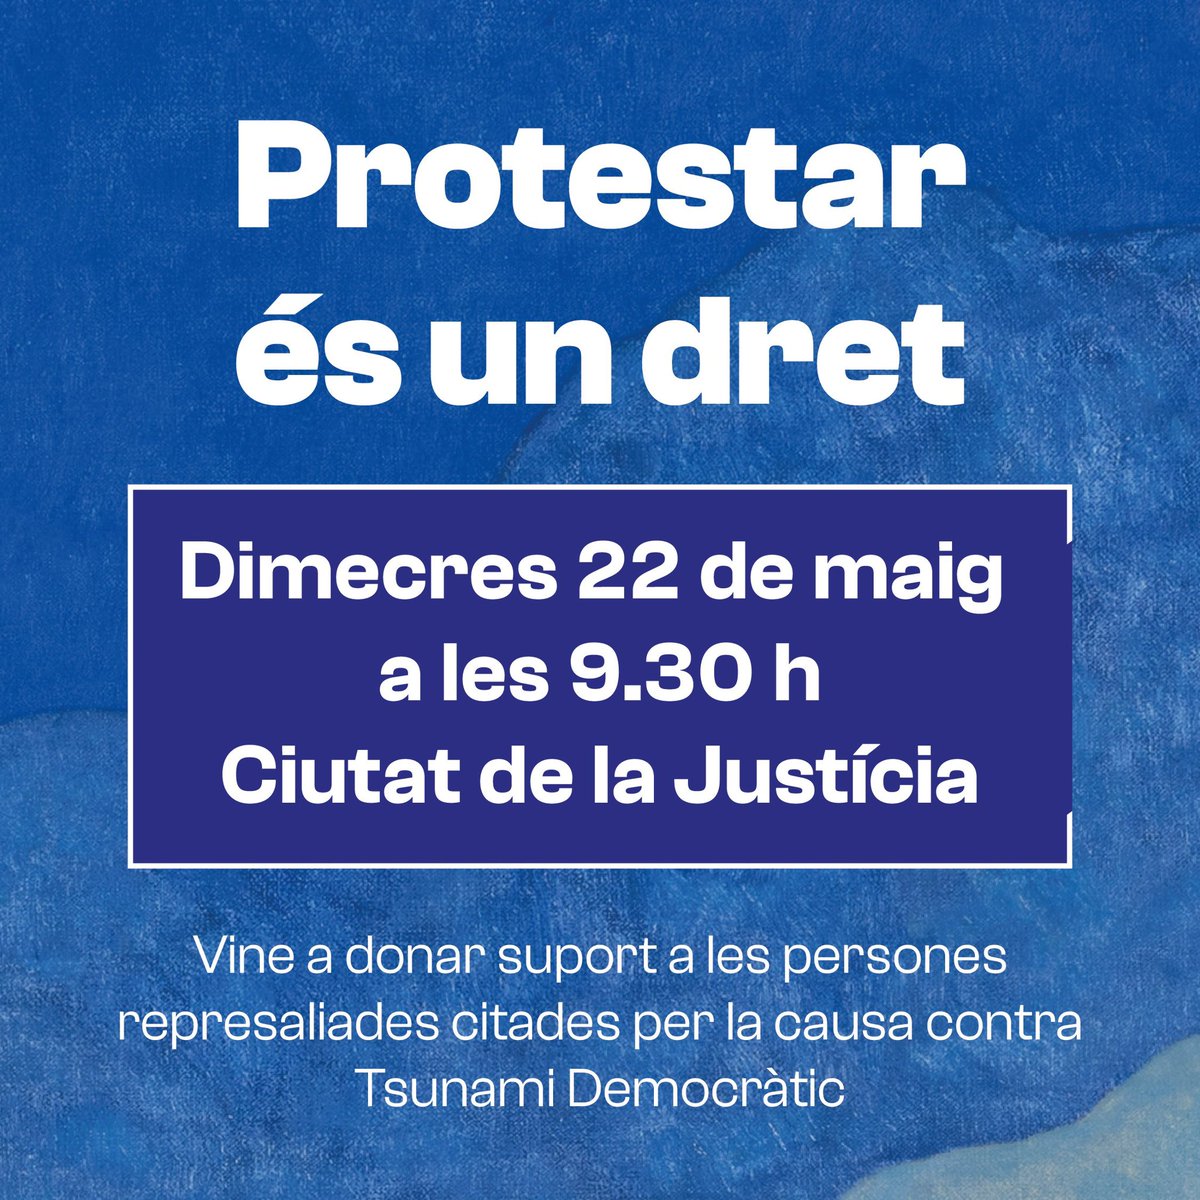 🔴 PROTESTAR ÉS UN DRET! El dimecres 22 de maig a les 9.30 h a la Ciutat de la Justícia, vine a donar suport a les persones represaliades citades per la causa contra Tsunami Democràtic.